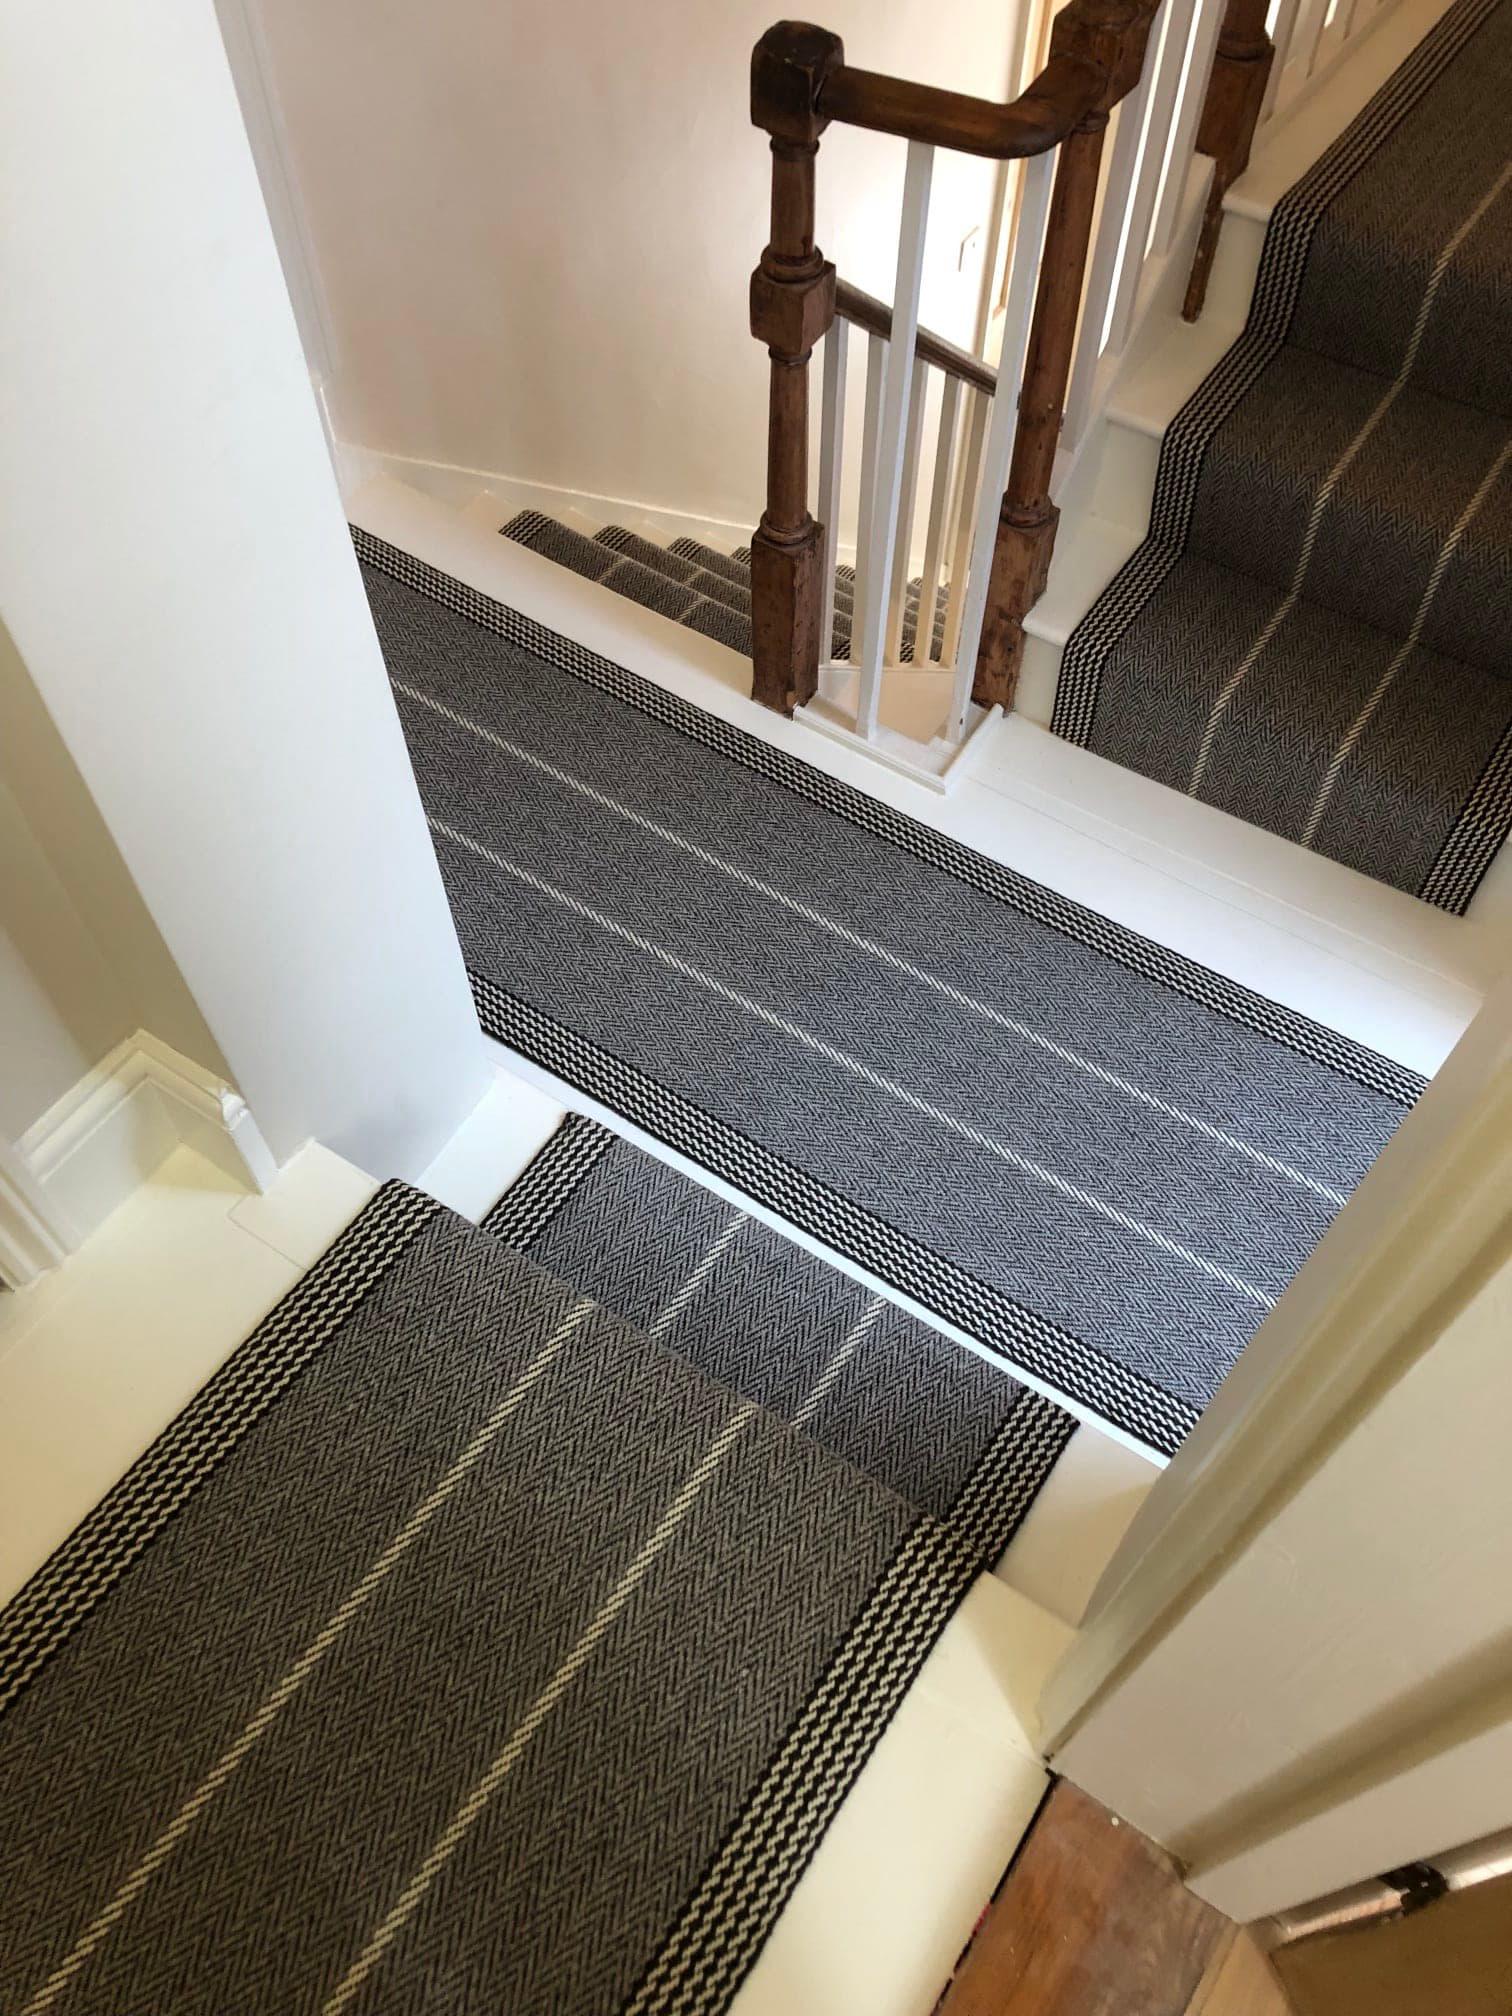 Images Ipswich Carpet & Flooring Ltd